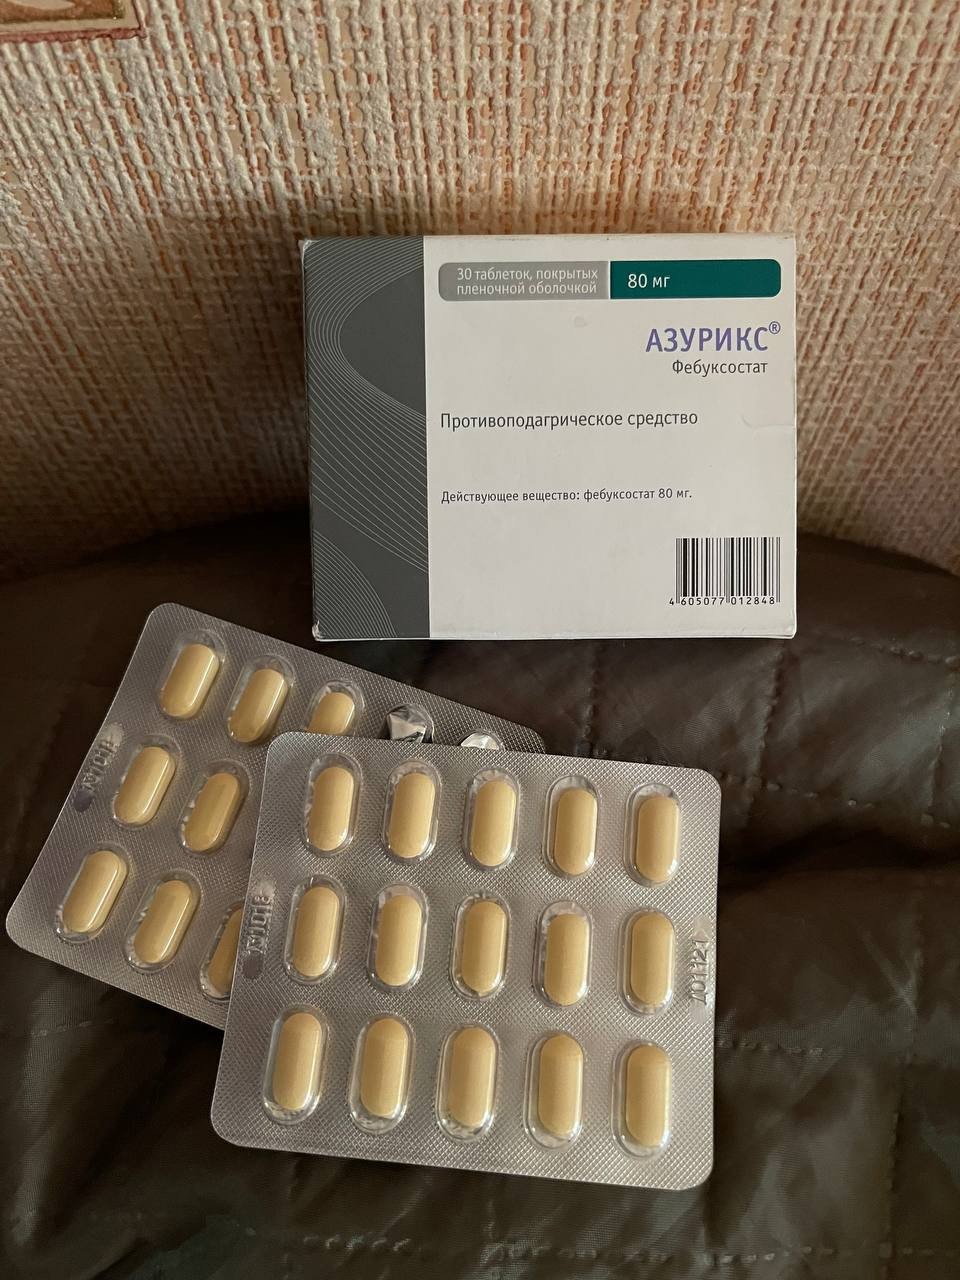 Азурикс - Хороший препарат для подагриков